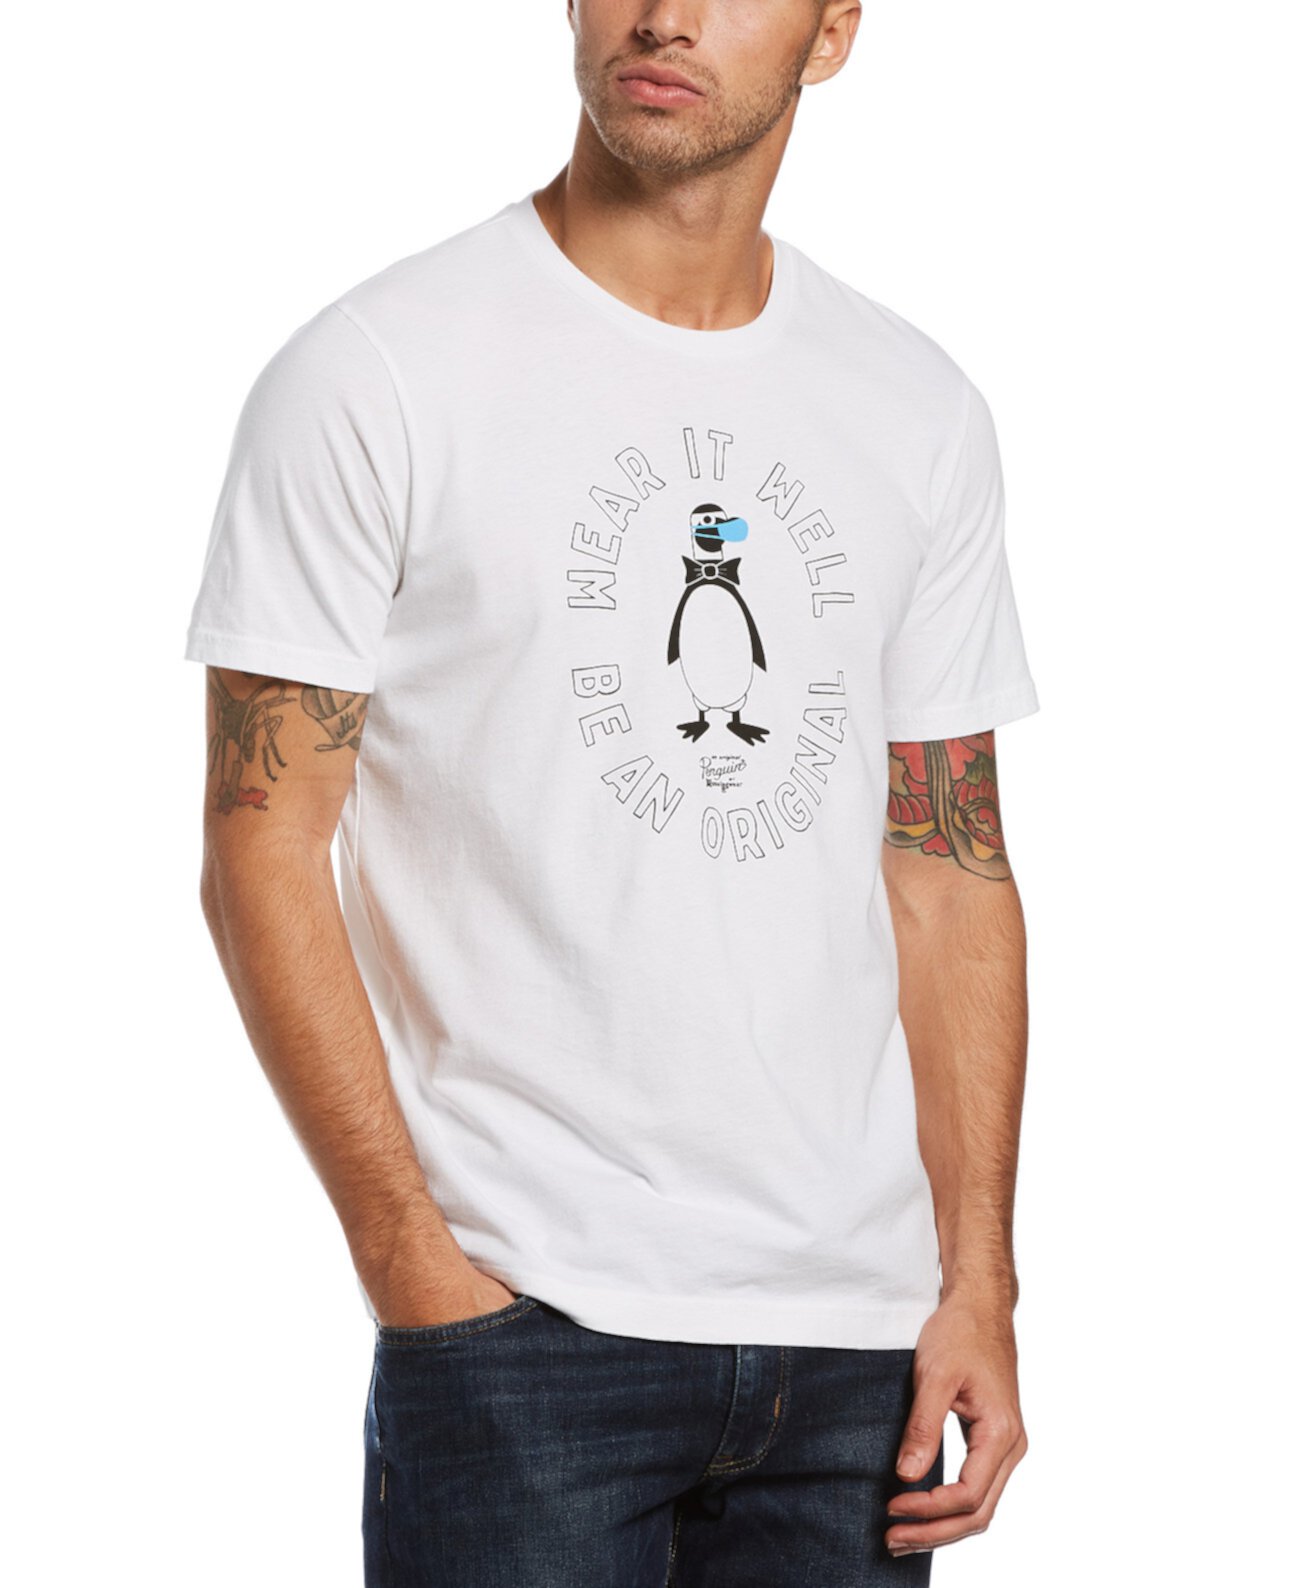 Men's Wear It Well T-Shirt Original Penguin